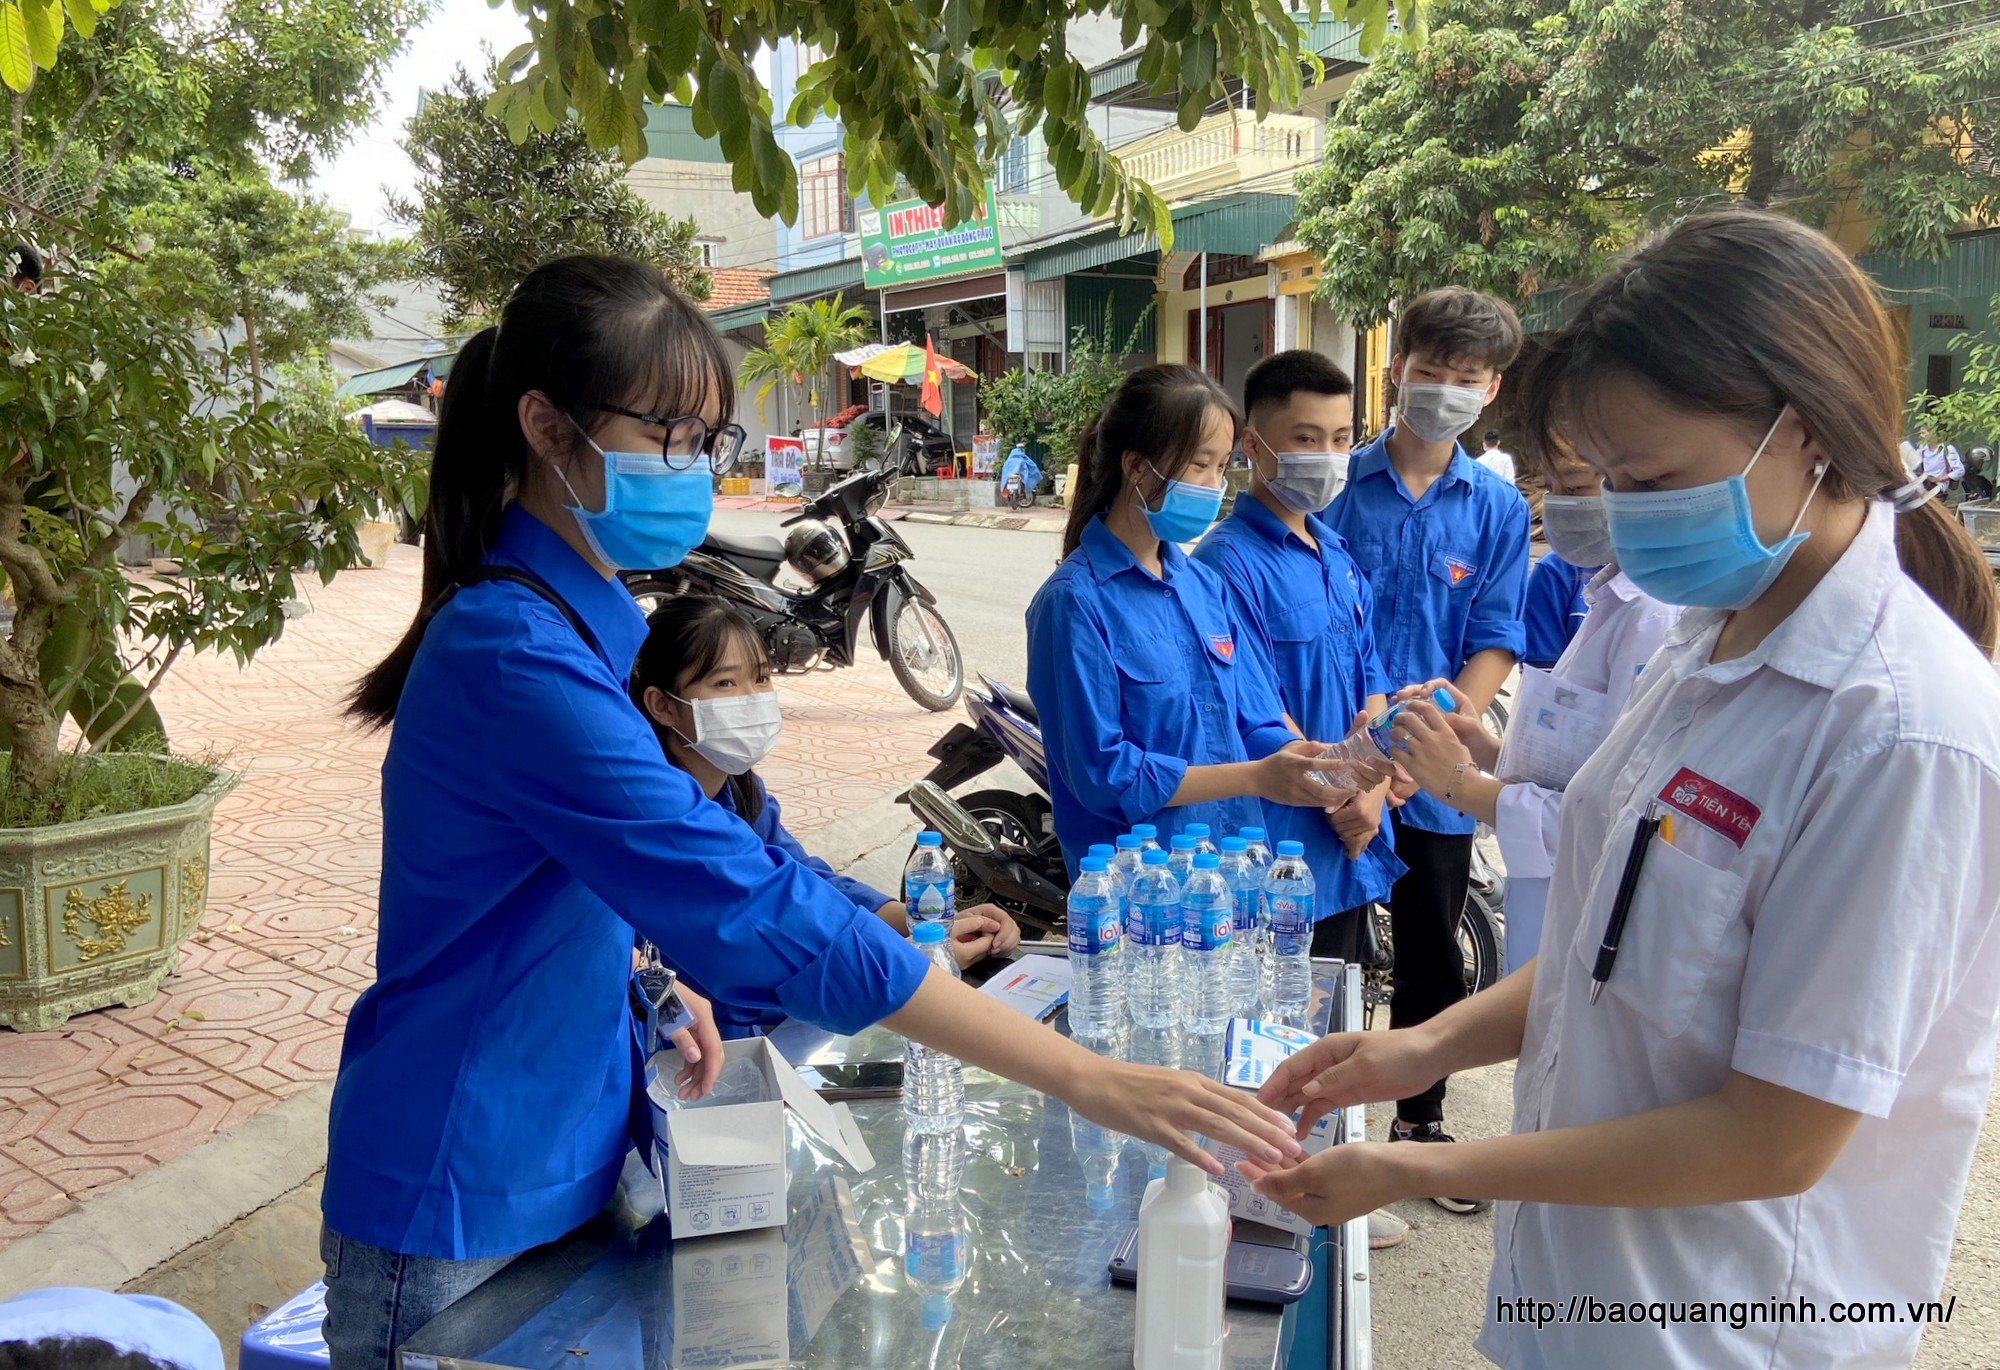 Thanh niên tình nguyện hướng dẫn thí sinh rửa tay bằng dung dịch sát khuẩn trước khi vào khu vực thi.